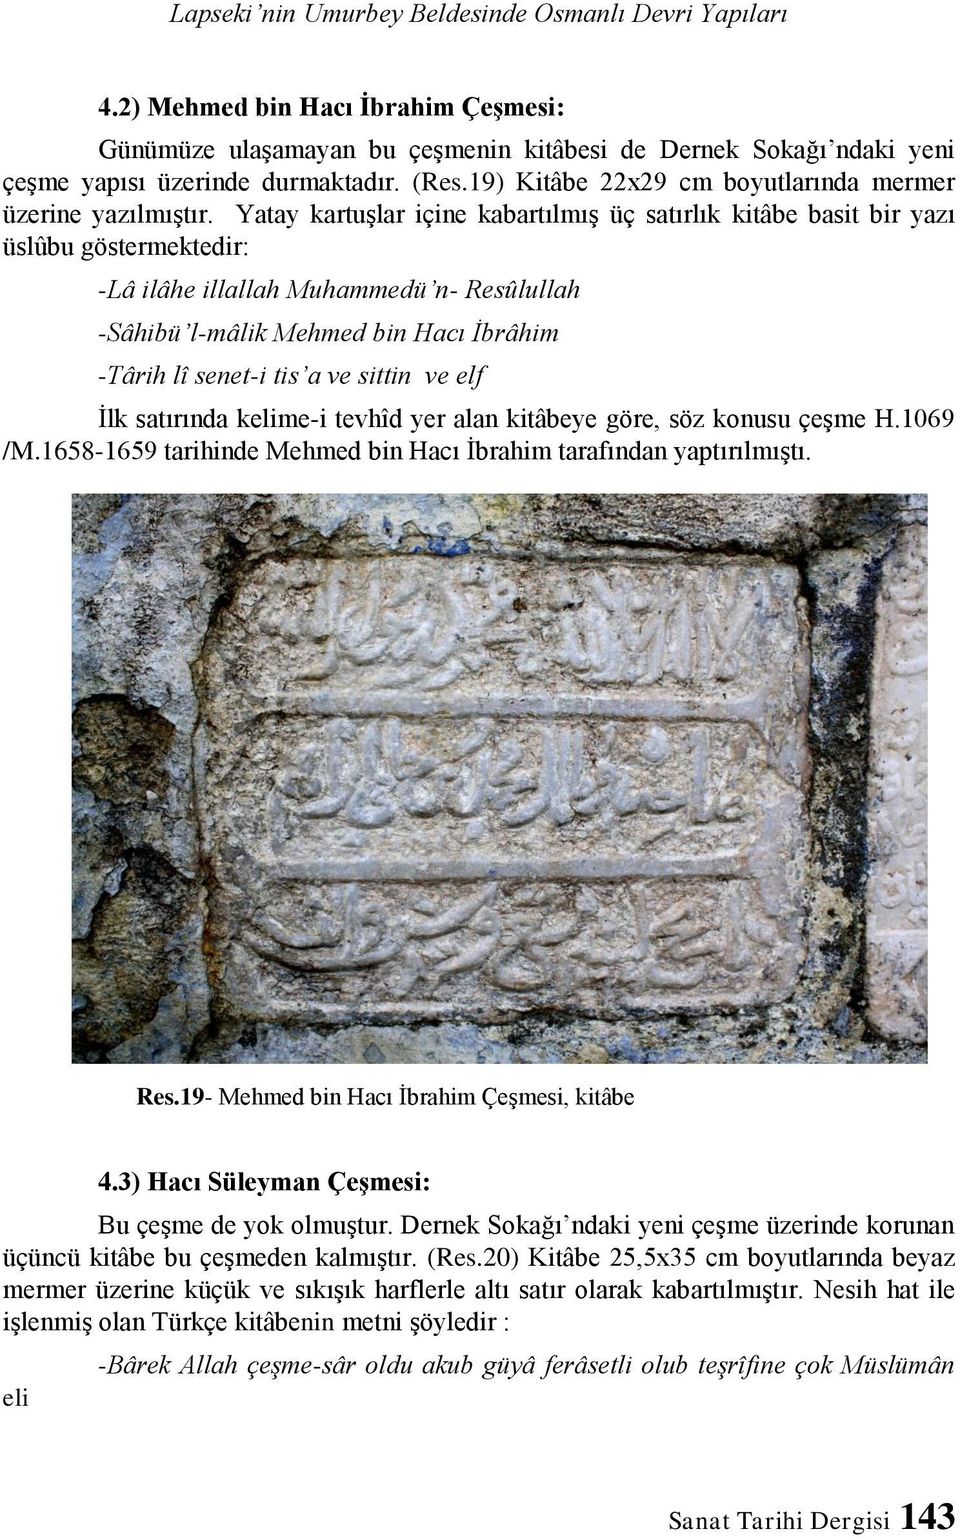 Yatay kartuşlar içine kabartılmış üç satırlık kitâbe basit bir yazı üslûbu göstermektedir: -Lâ ilâhe illallah Muhammedü n- Resûlullah -Sâhibü l-mâlik Mehmed bin Hacı İbrâhim -Târih lî senet-i tis a